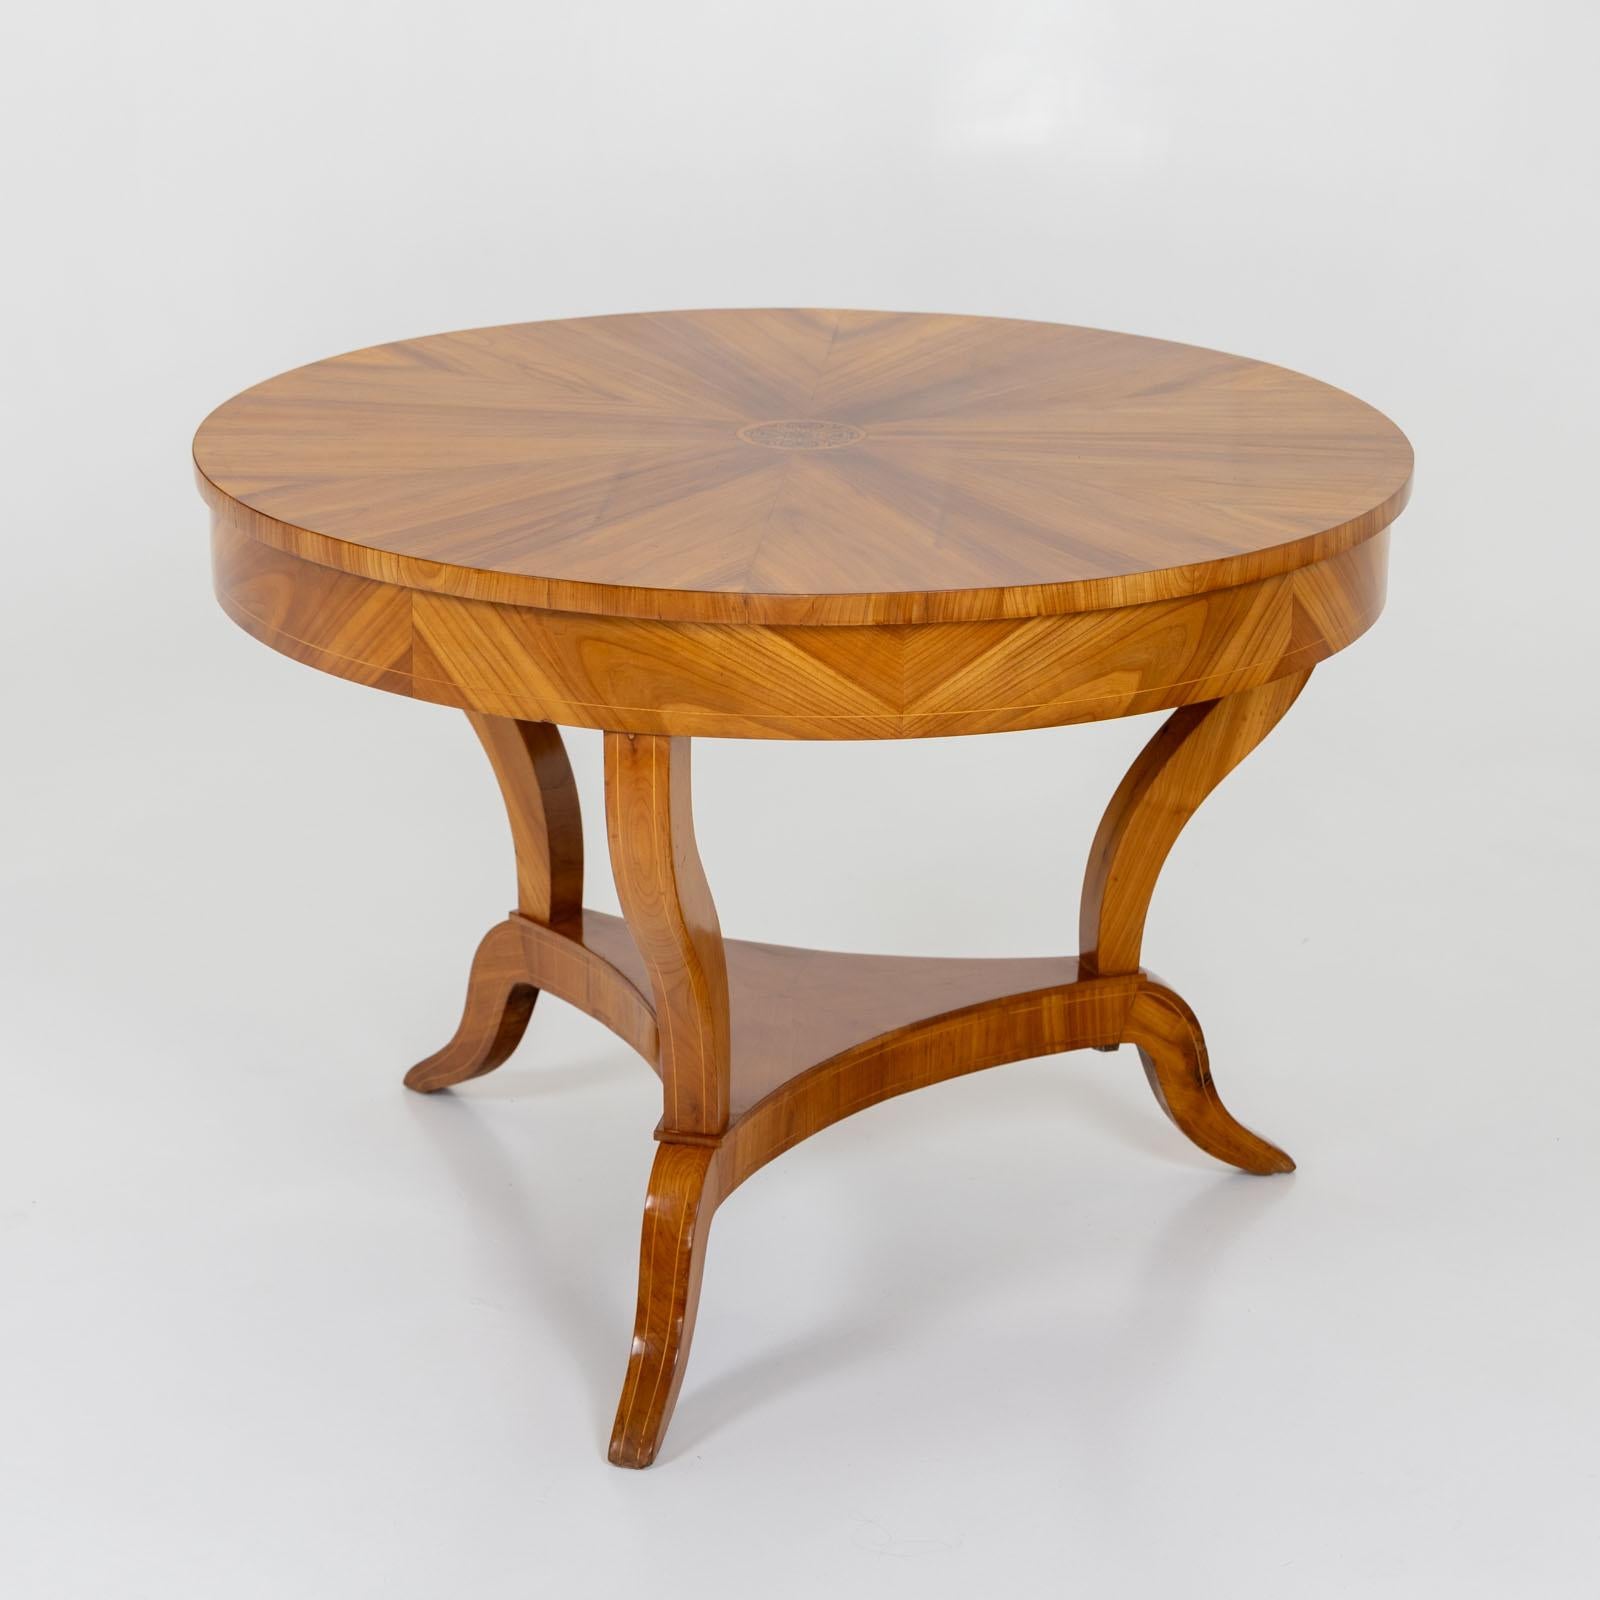 Early 19th Century Biedermeier Salon Table, around 1820 For Sale